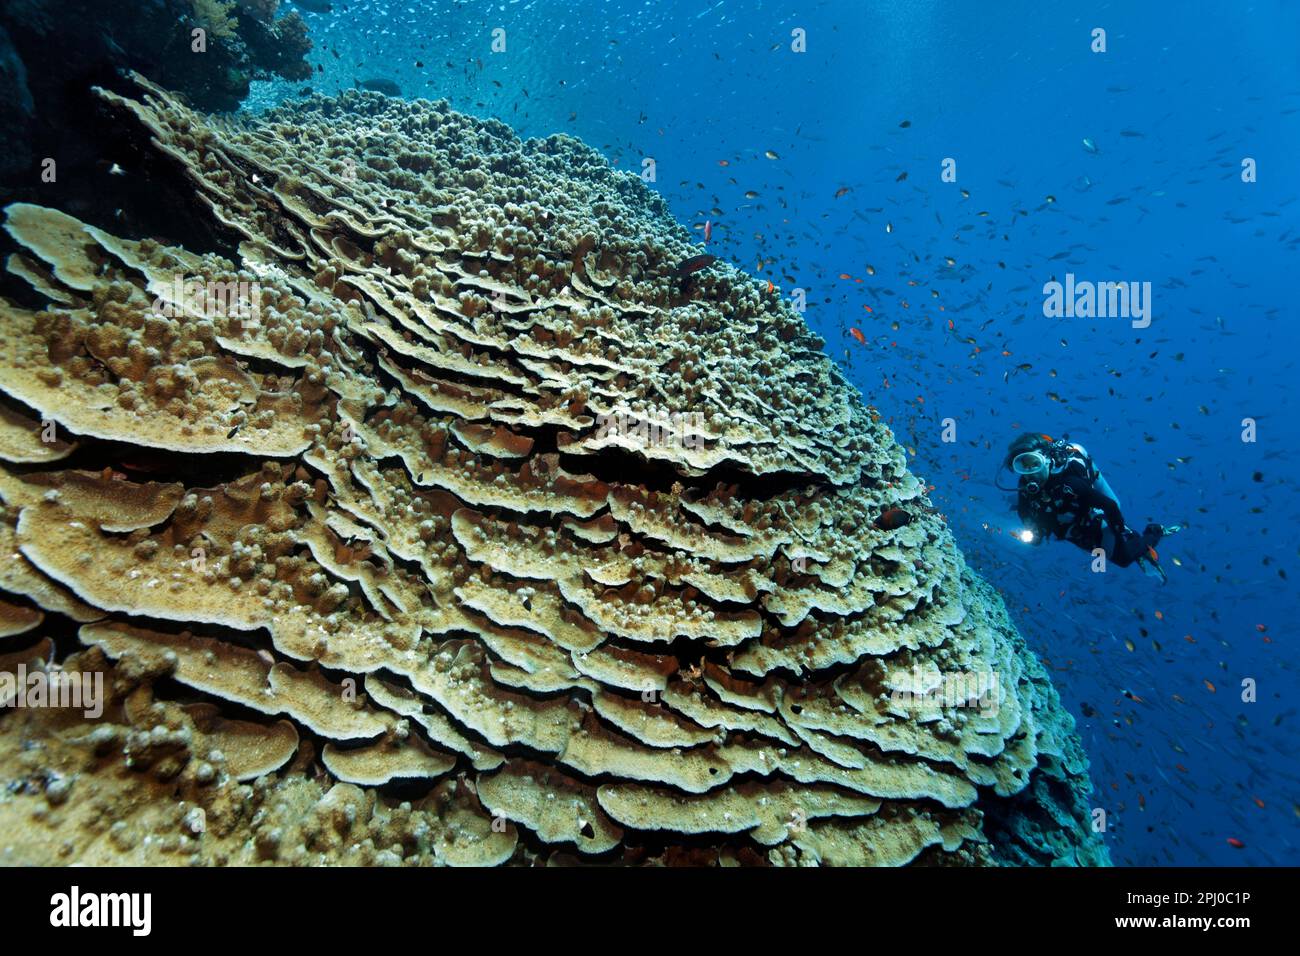 Taucher mit Blick auf die Akropora-Koralle (Acropora danai), sehr groß, riesig, an der Korallenriffwand, Rotes Meer, Daedalus-Riff, Marsa Alam, Ägypten Stockfoto